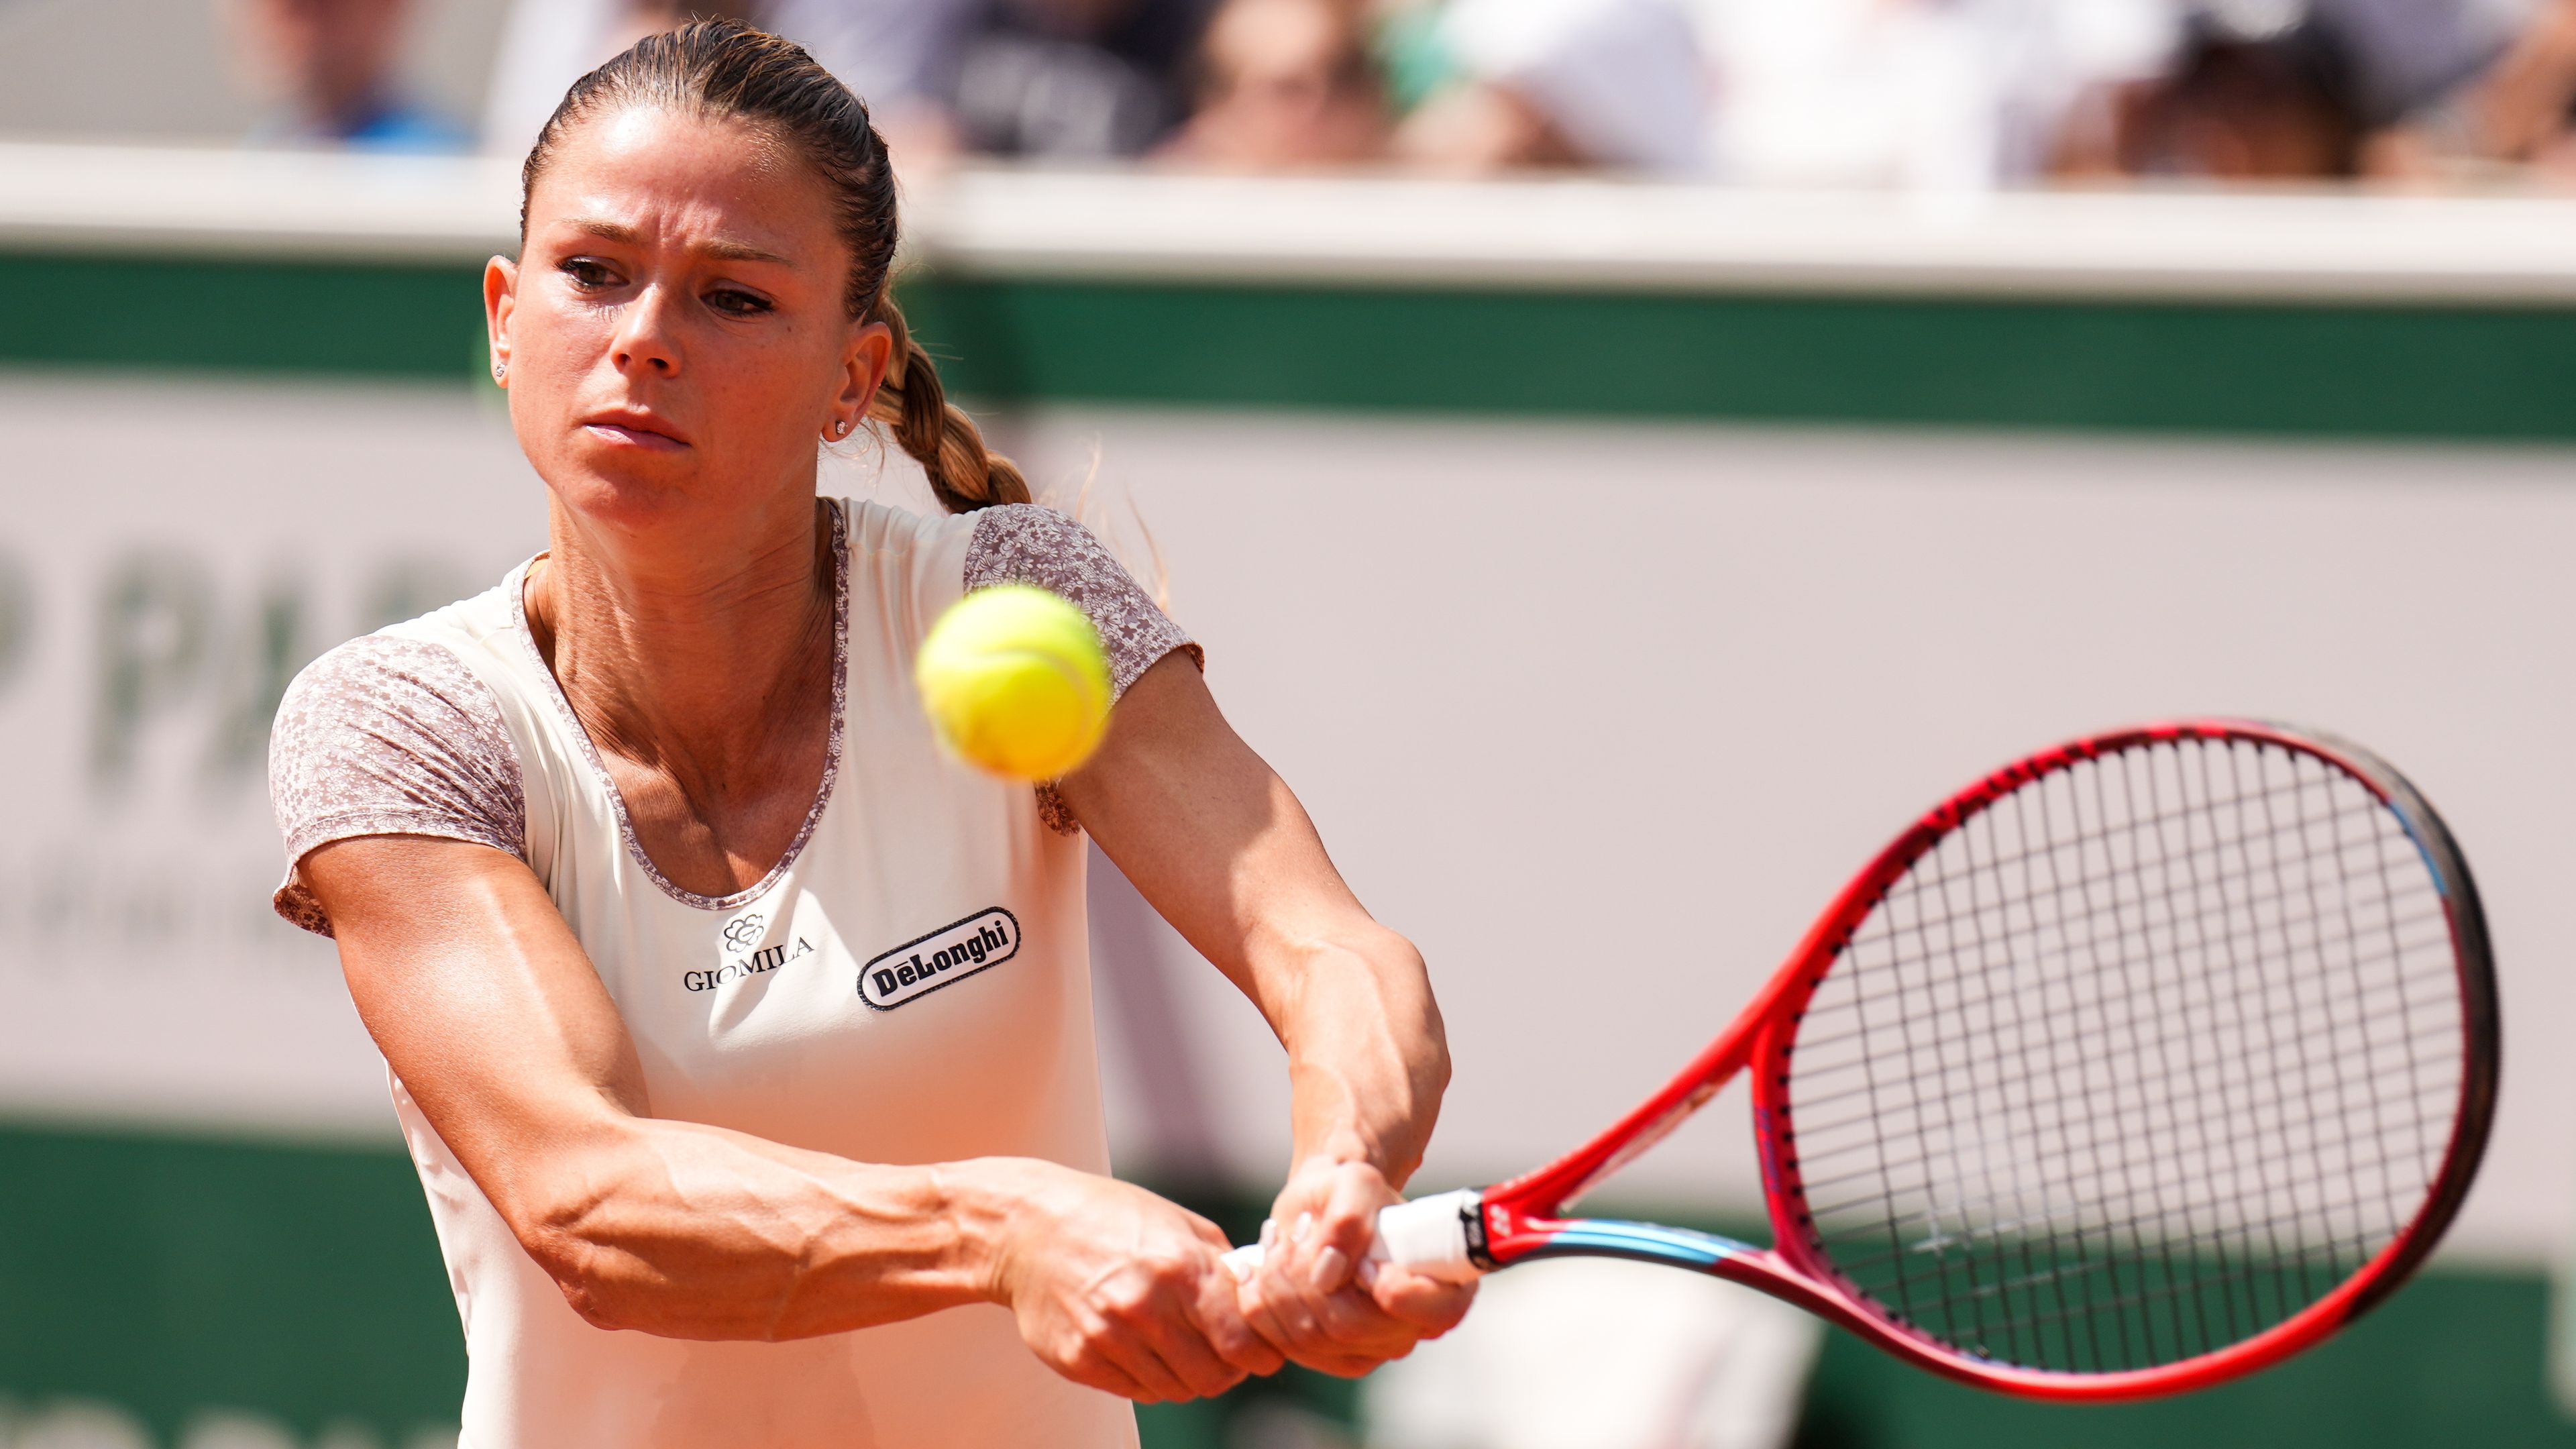 Italian tennis player Camila Giorgi embroiled in fake vaccine controversy